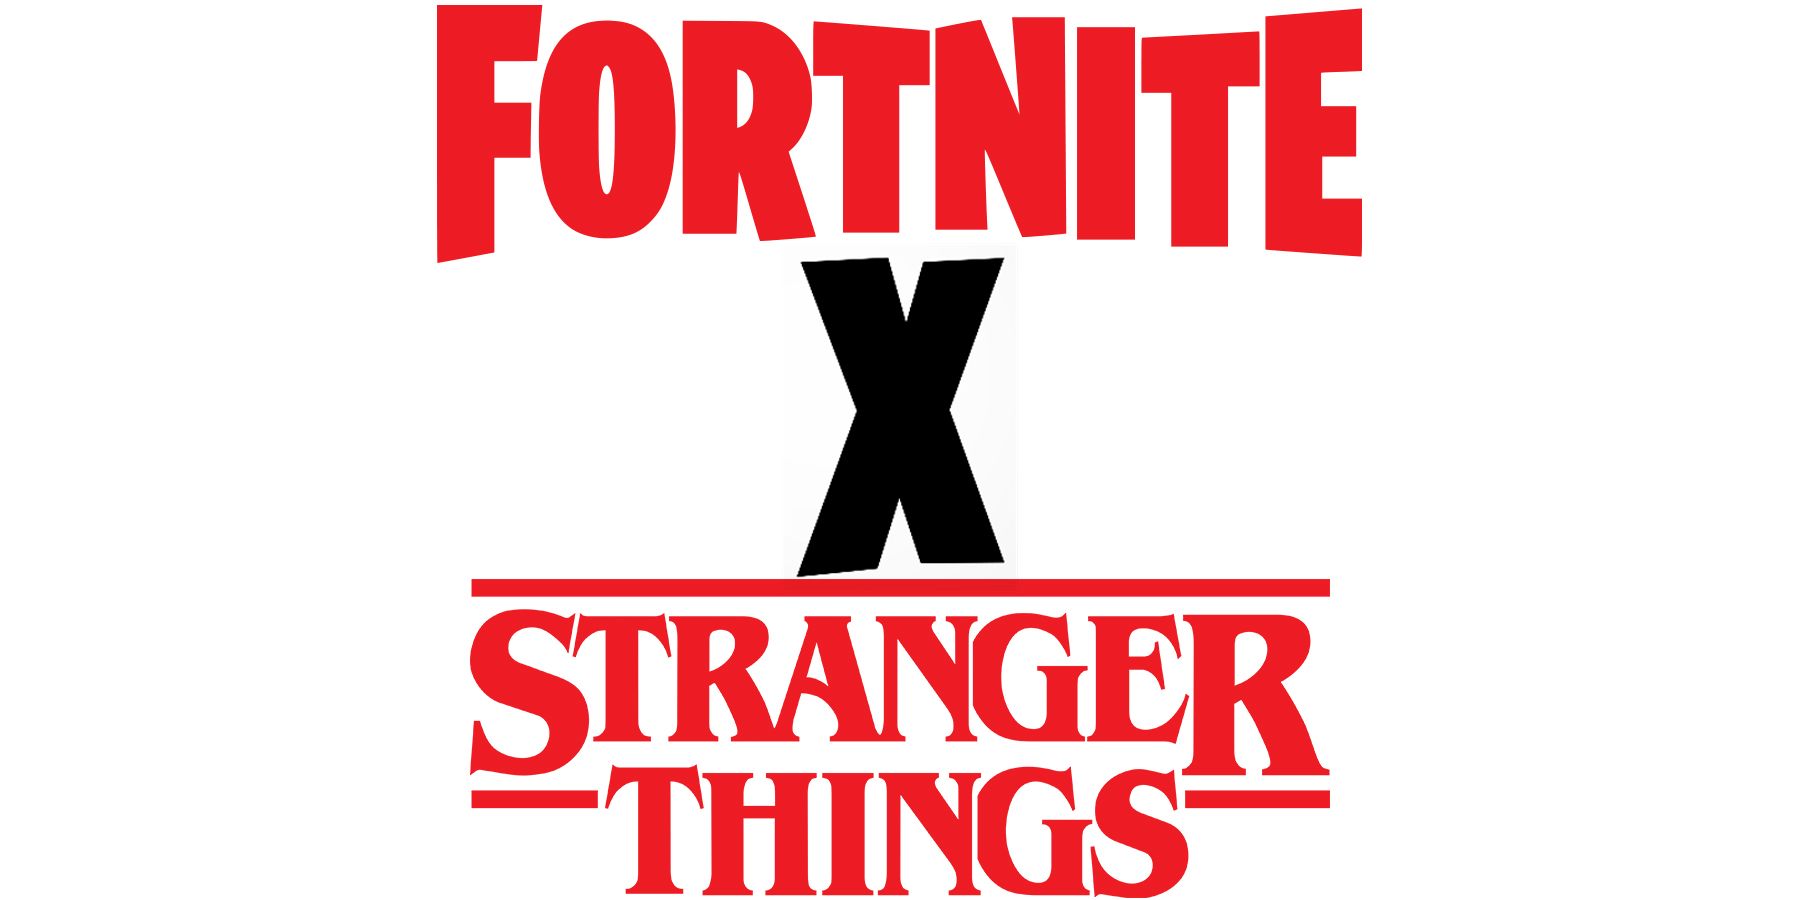 Fortnite x Stranger Things logo mockup on white background